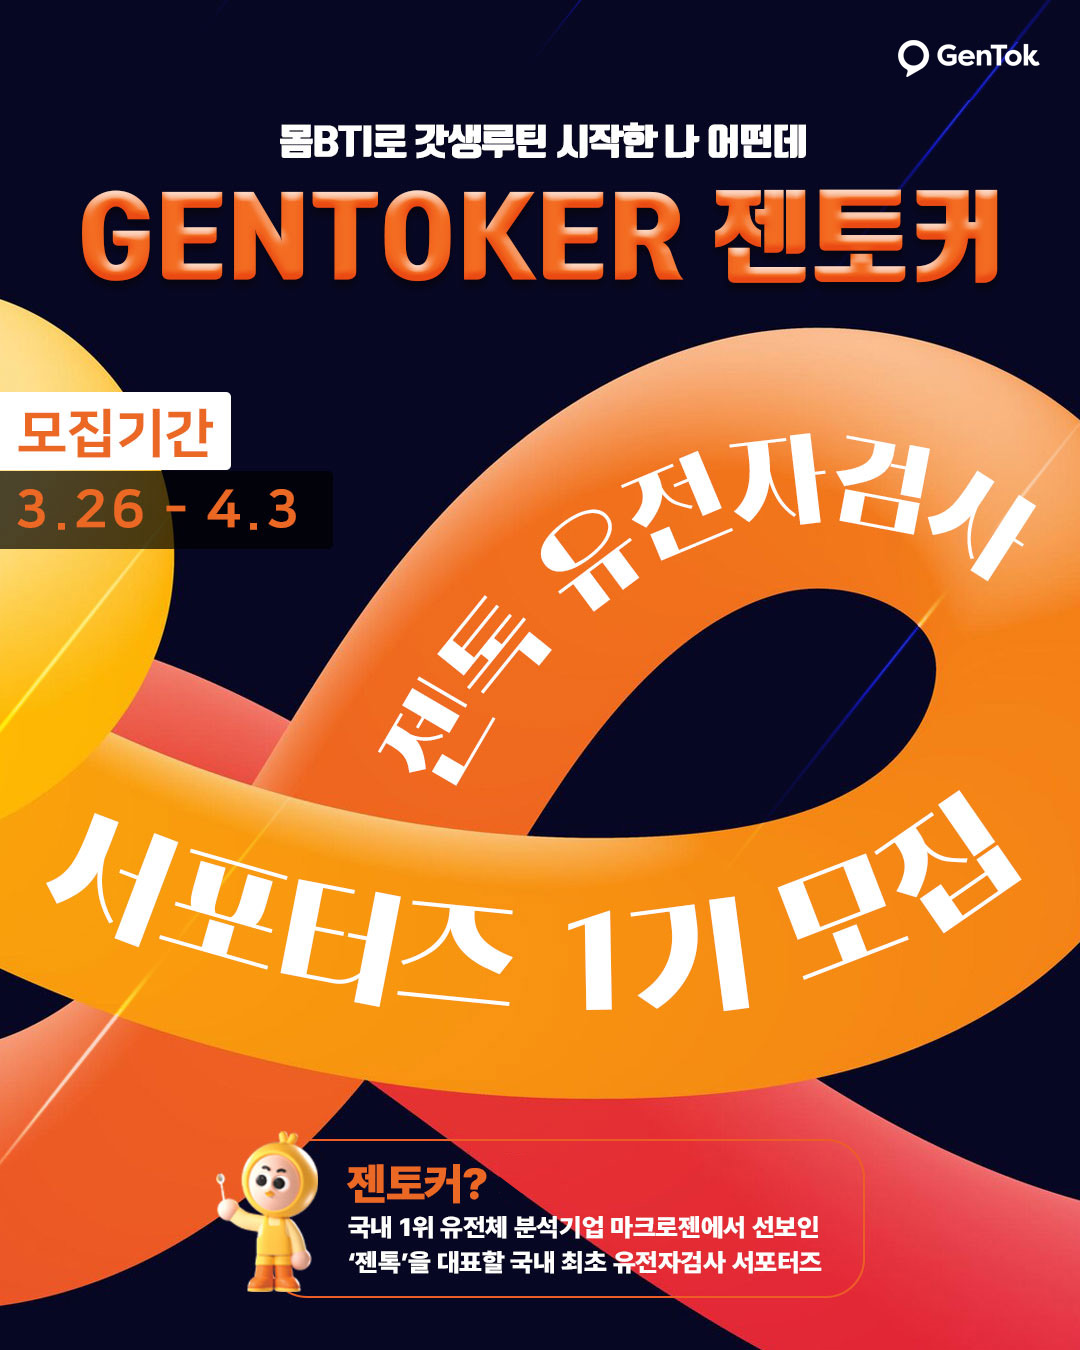 젠톡 유전자검사 서포터즈 젠토커 1기 모집